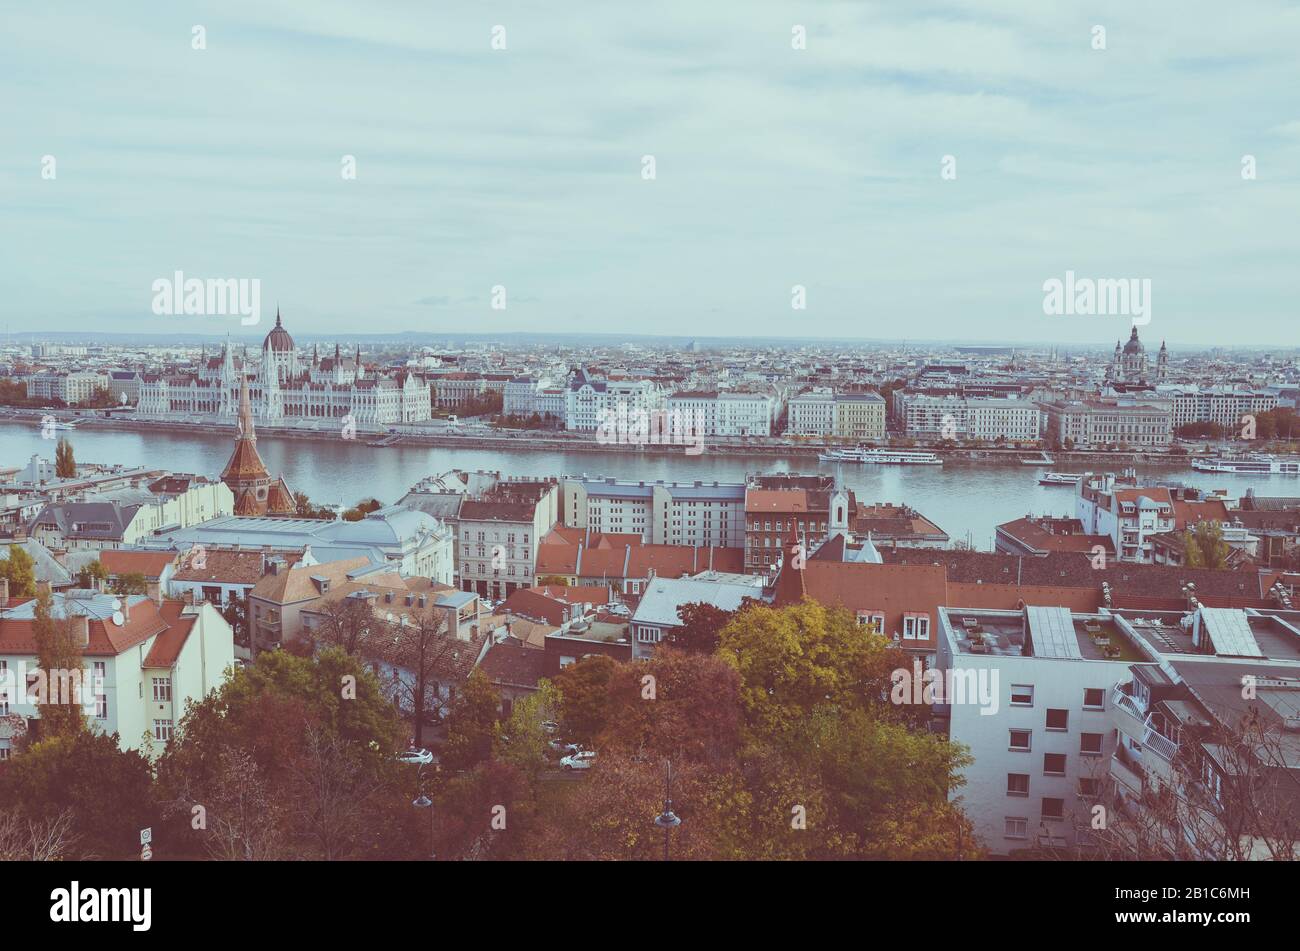 Stadtbild von Budapest, Ungarn. Ungarischer Parlamentsbau, Orszaghaz, im Hintergrund auf der anderen Seite der Donau. Horizontales Foto mit Vintage-Filter. Stockfoto